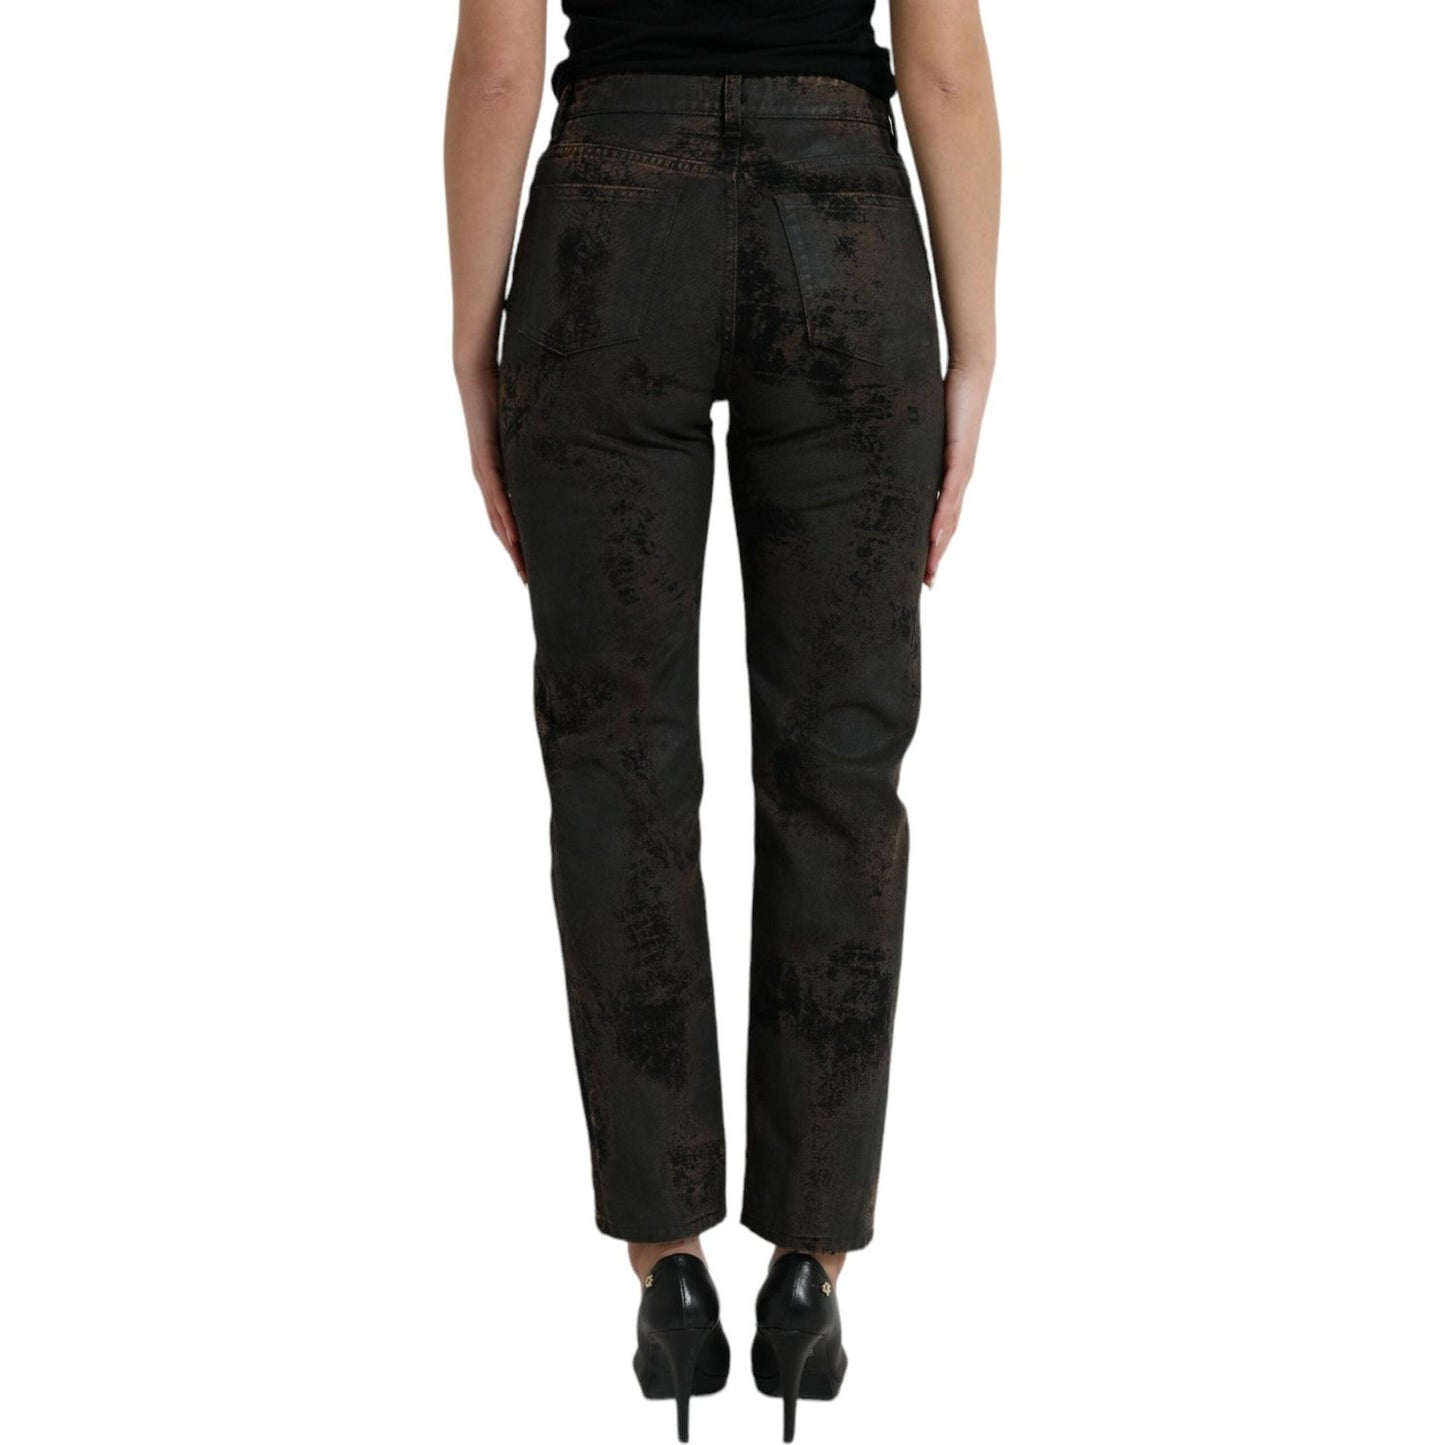 Dolce & Gabbana Chic Boyfriend Mid Waist Stretch Jeans brown-boyfriend-mid-waist-cotton-denim-jeans